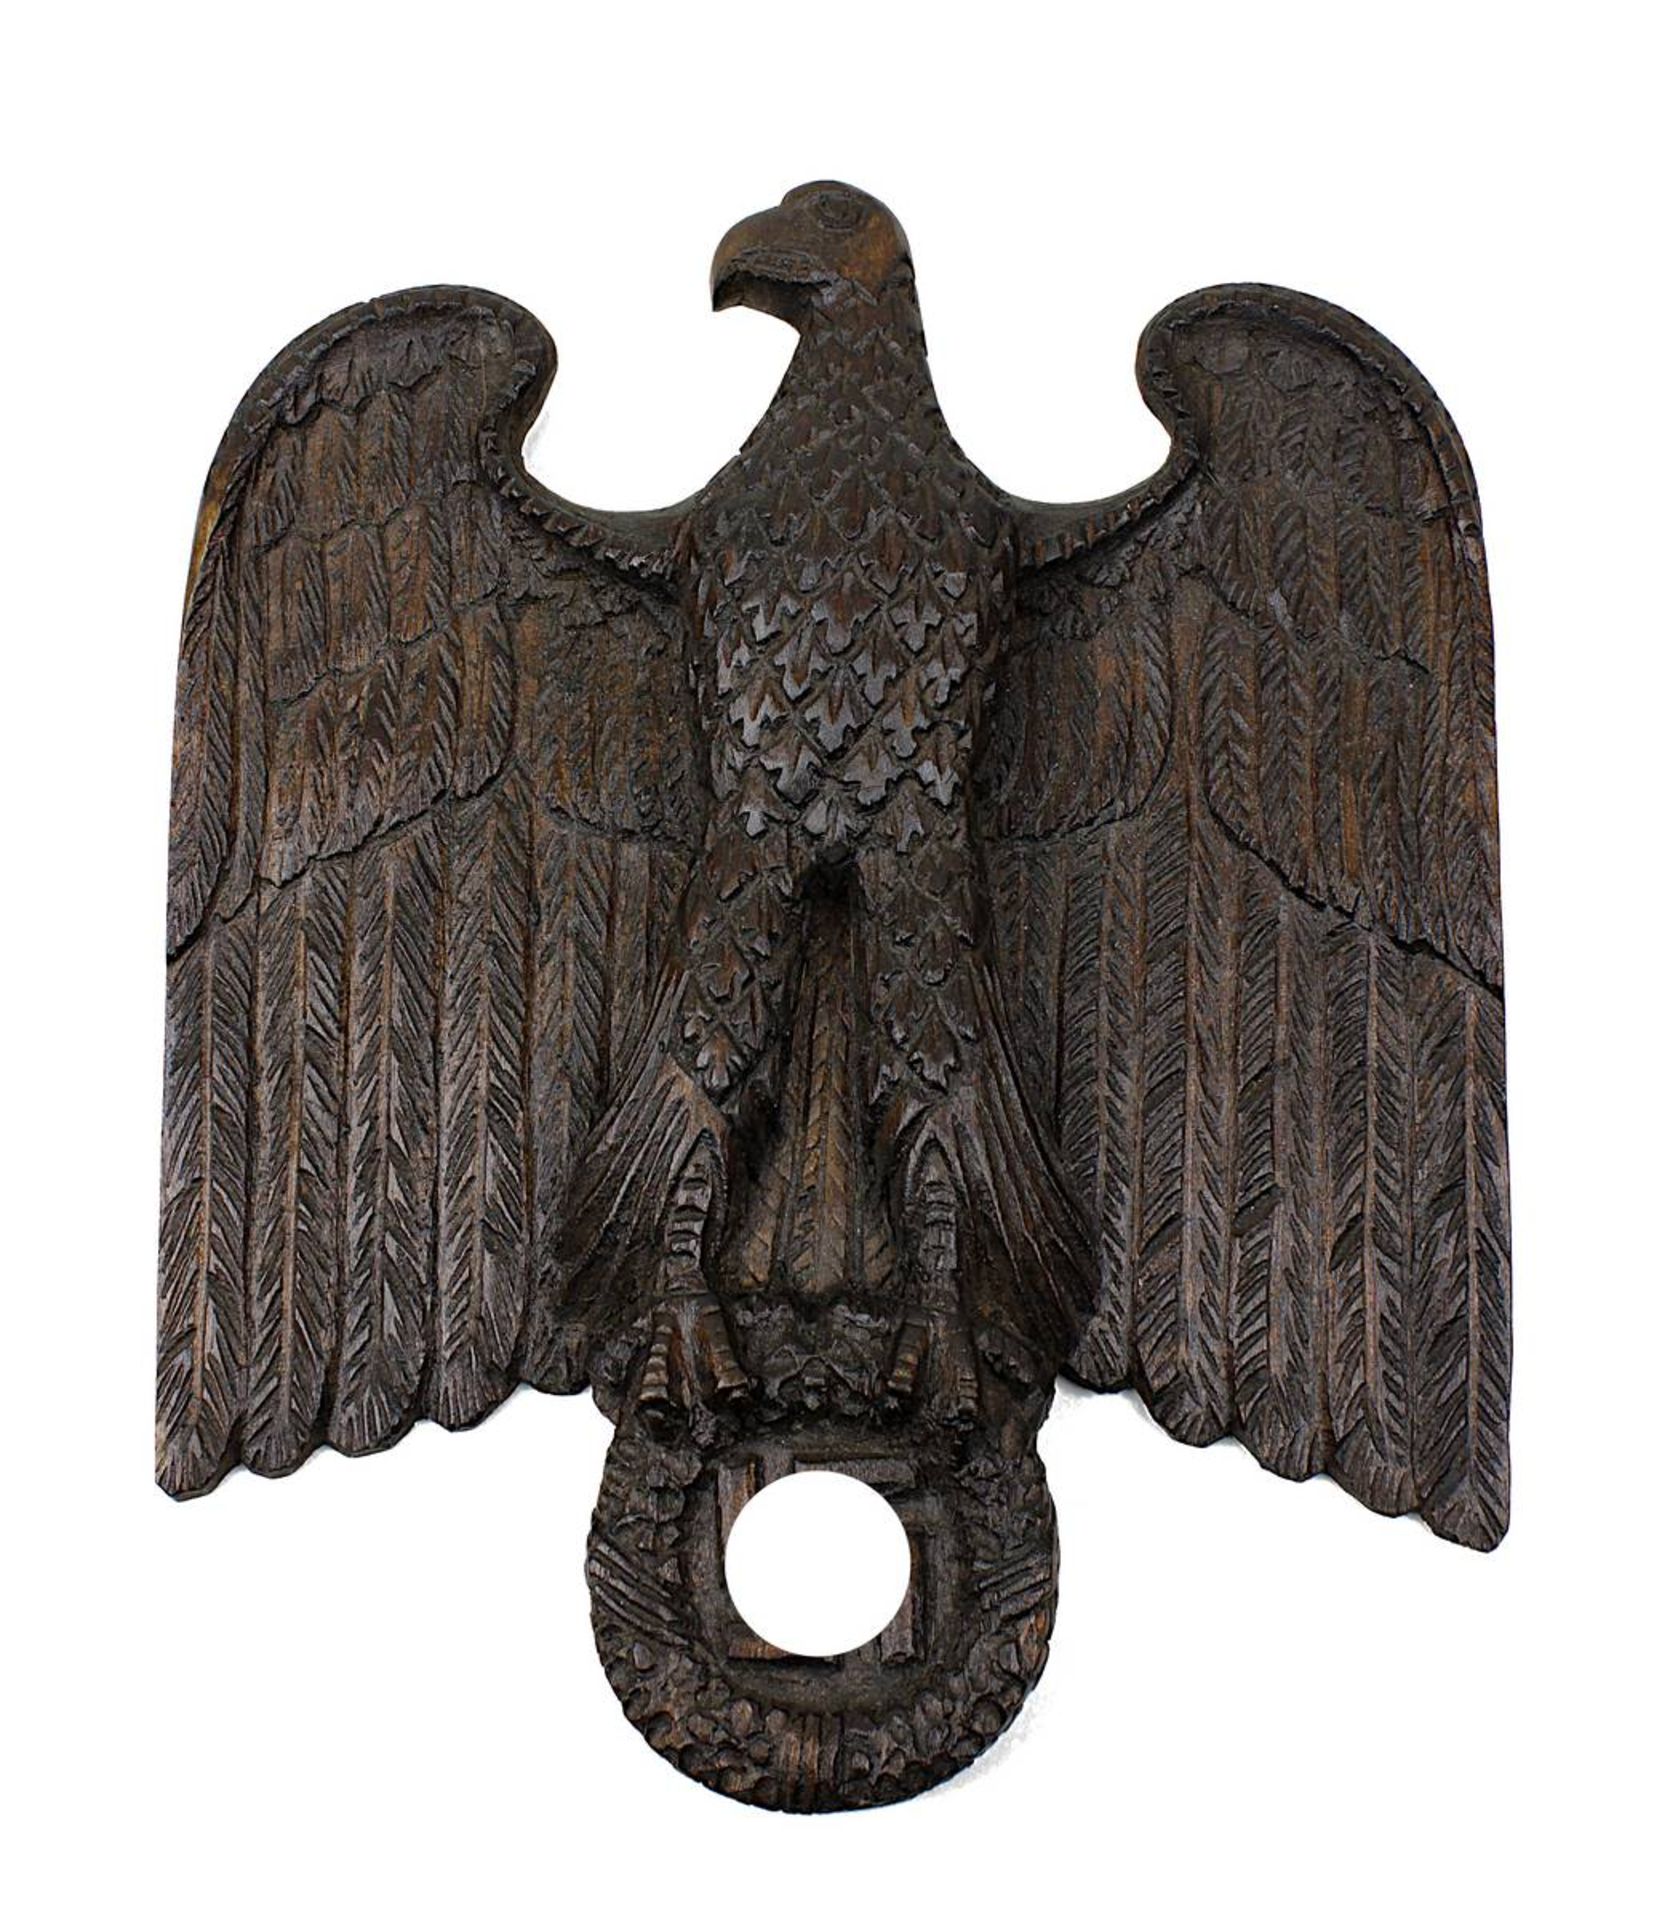 Adler aus Holz, Deutsches Reich 1933-45, aus einem Stück handgeschnitzt, Länge 24,5 cm, Breite 20